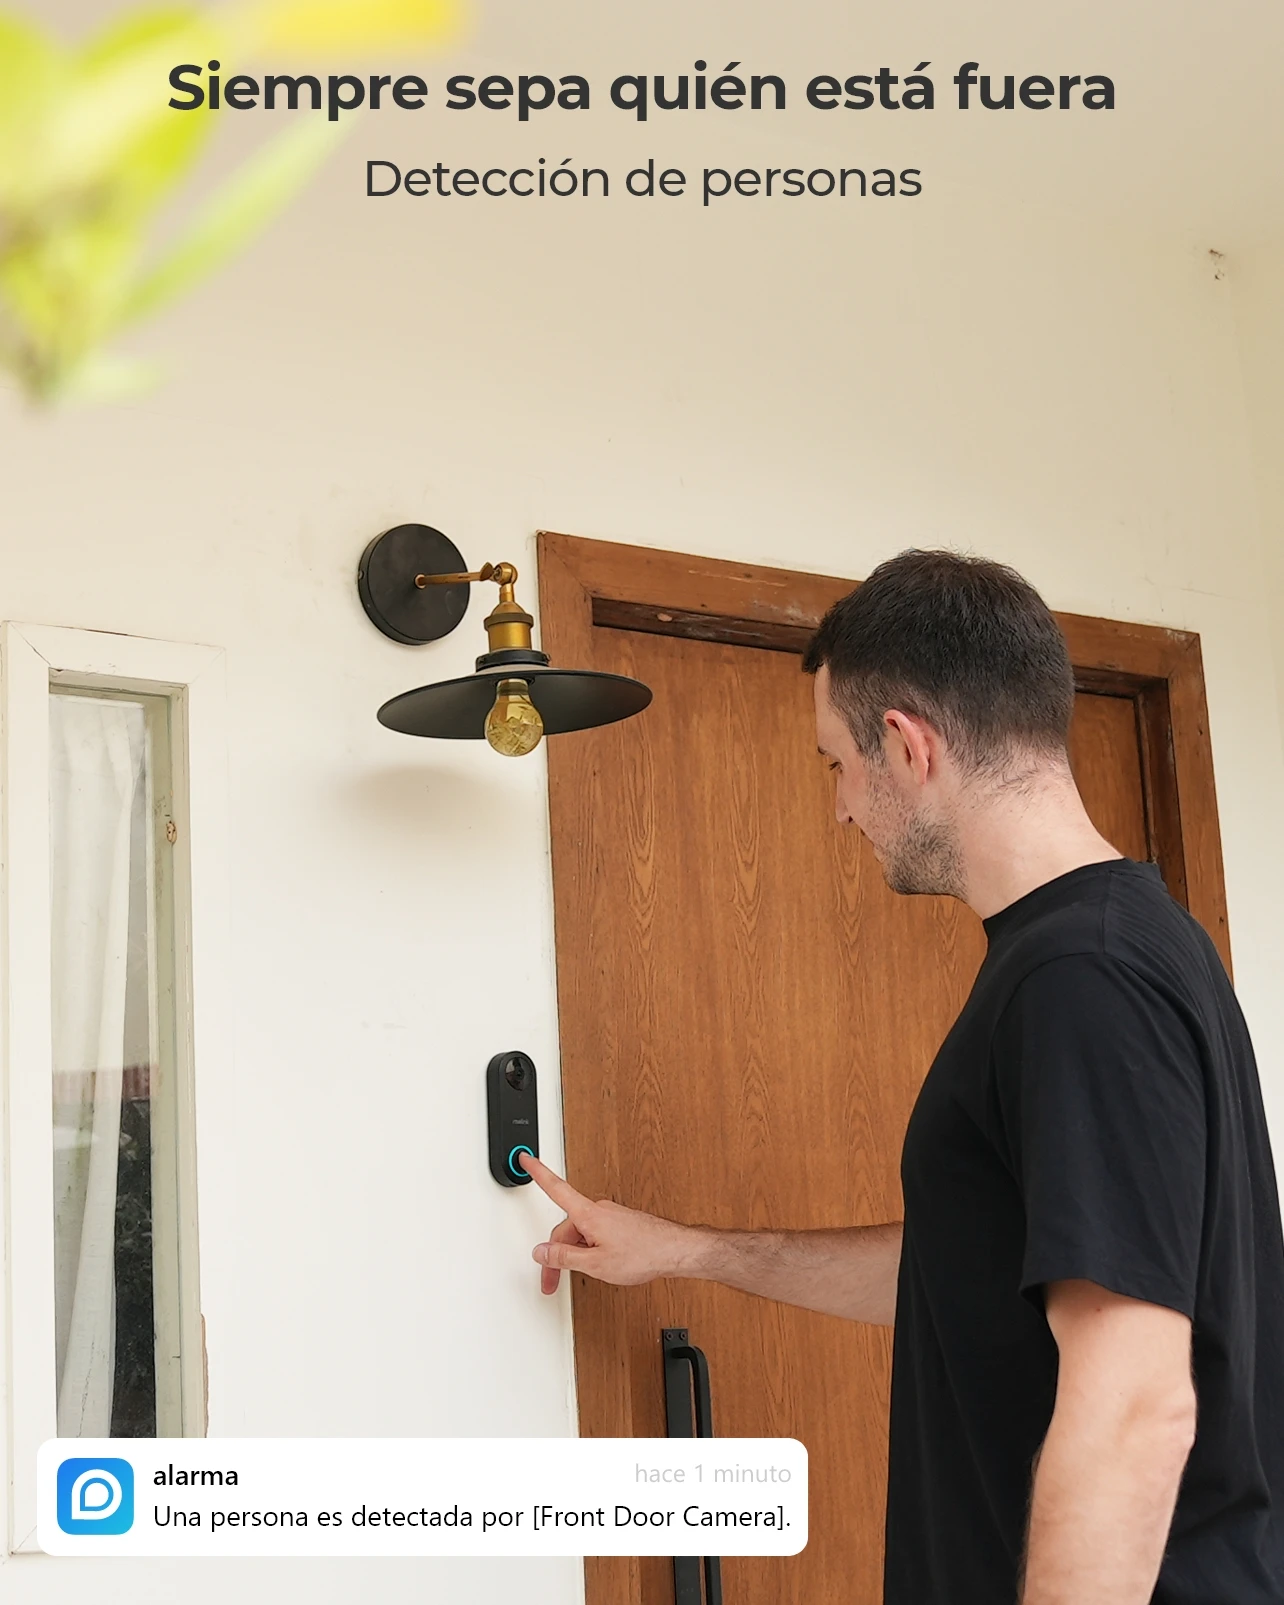 Reolink Smart 2K+ Wired Video Doorbell PoE Video Intercom with Chime Human Detection 2-Way Audio Door Bell Support Alexa Google